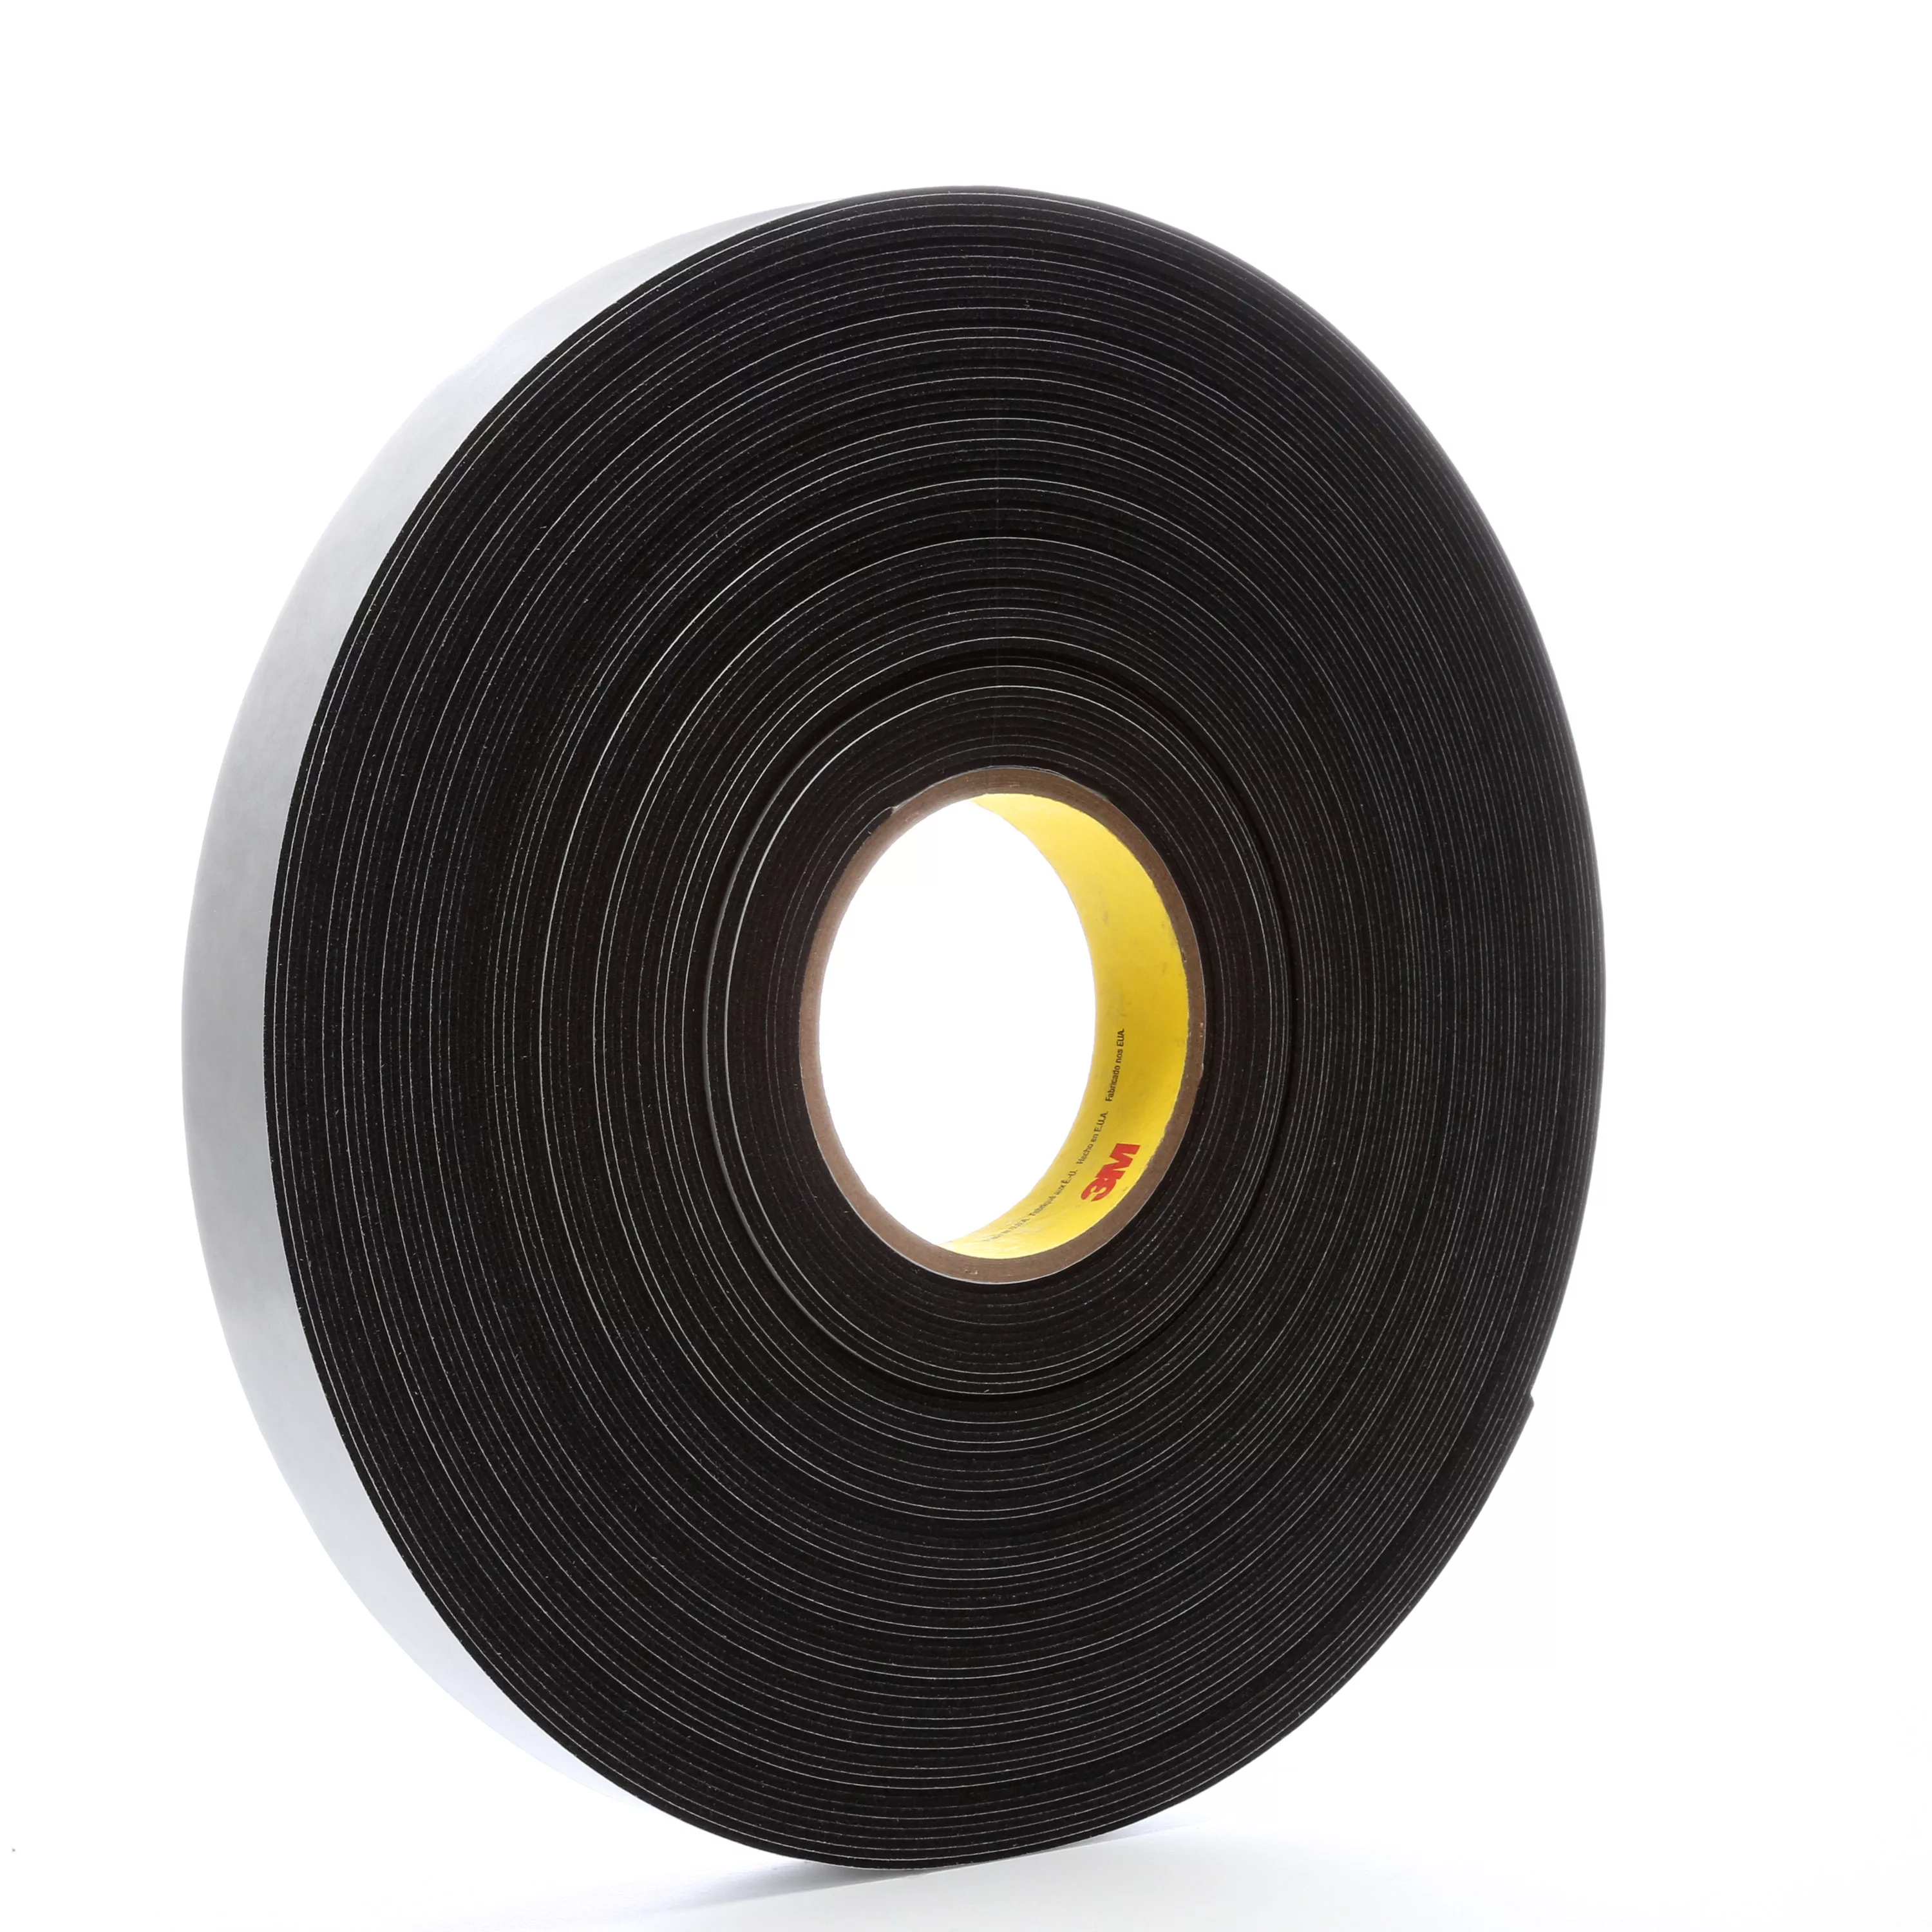 3M™ Vinyl Foam Tape 4516, Black, 1 in x 36 yd, 62 mil, 9 Roll/Case